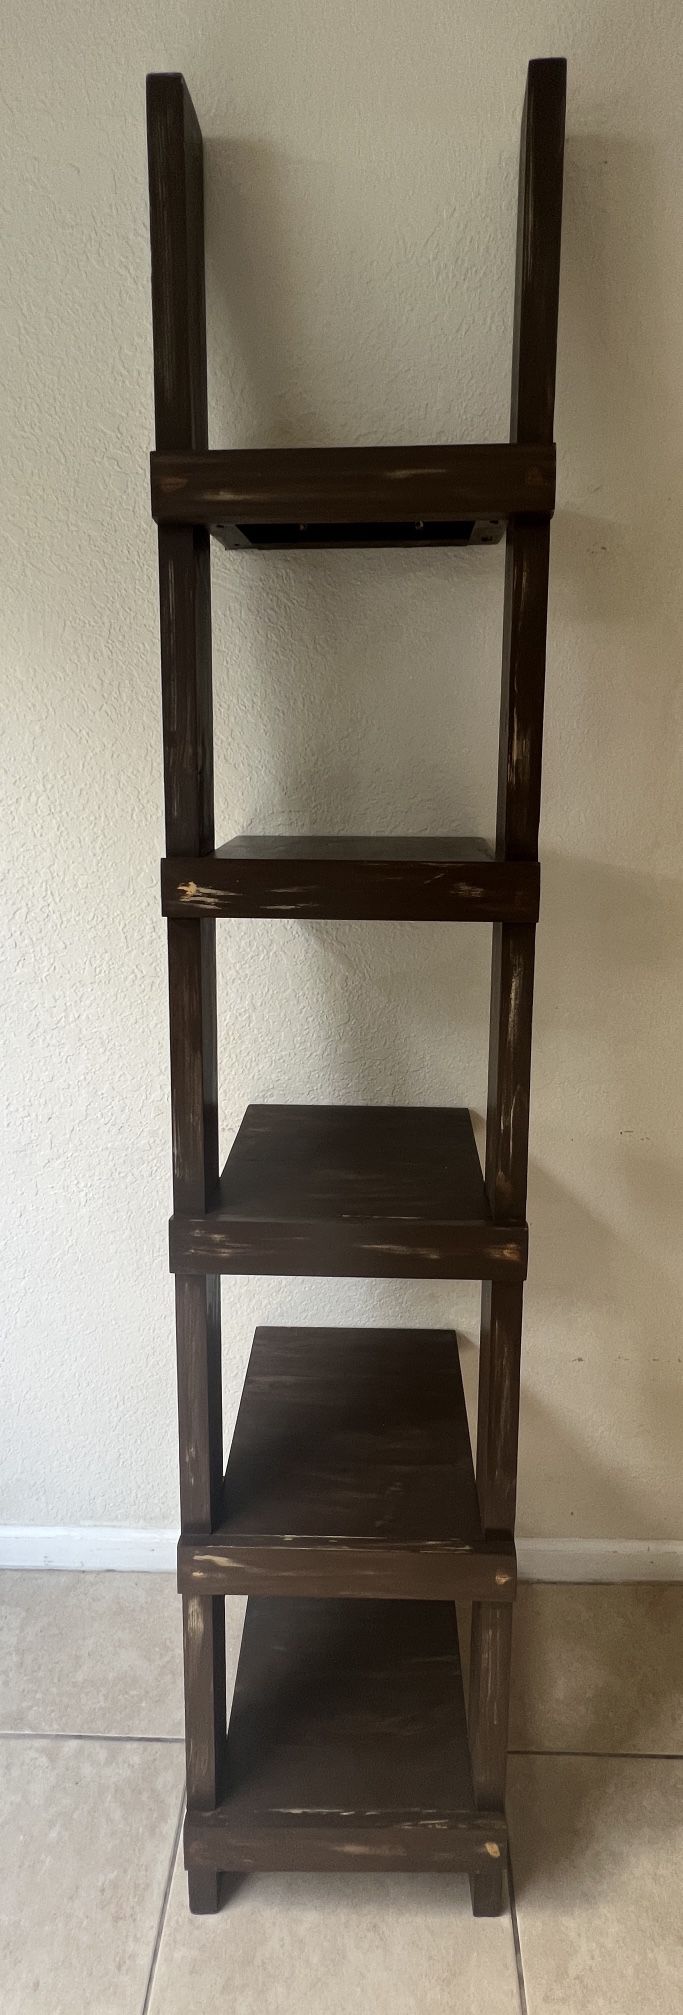 Rustic Wood Ladder Shelf 